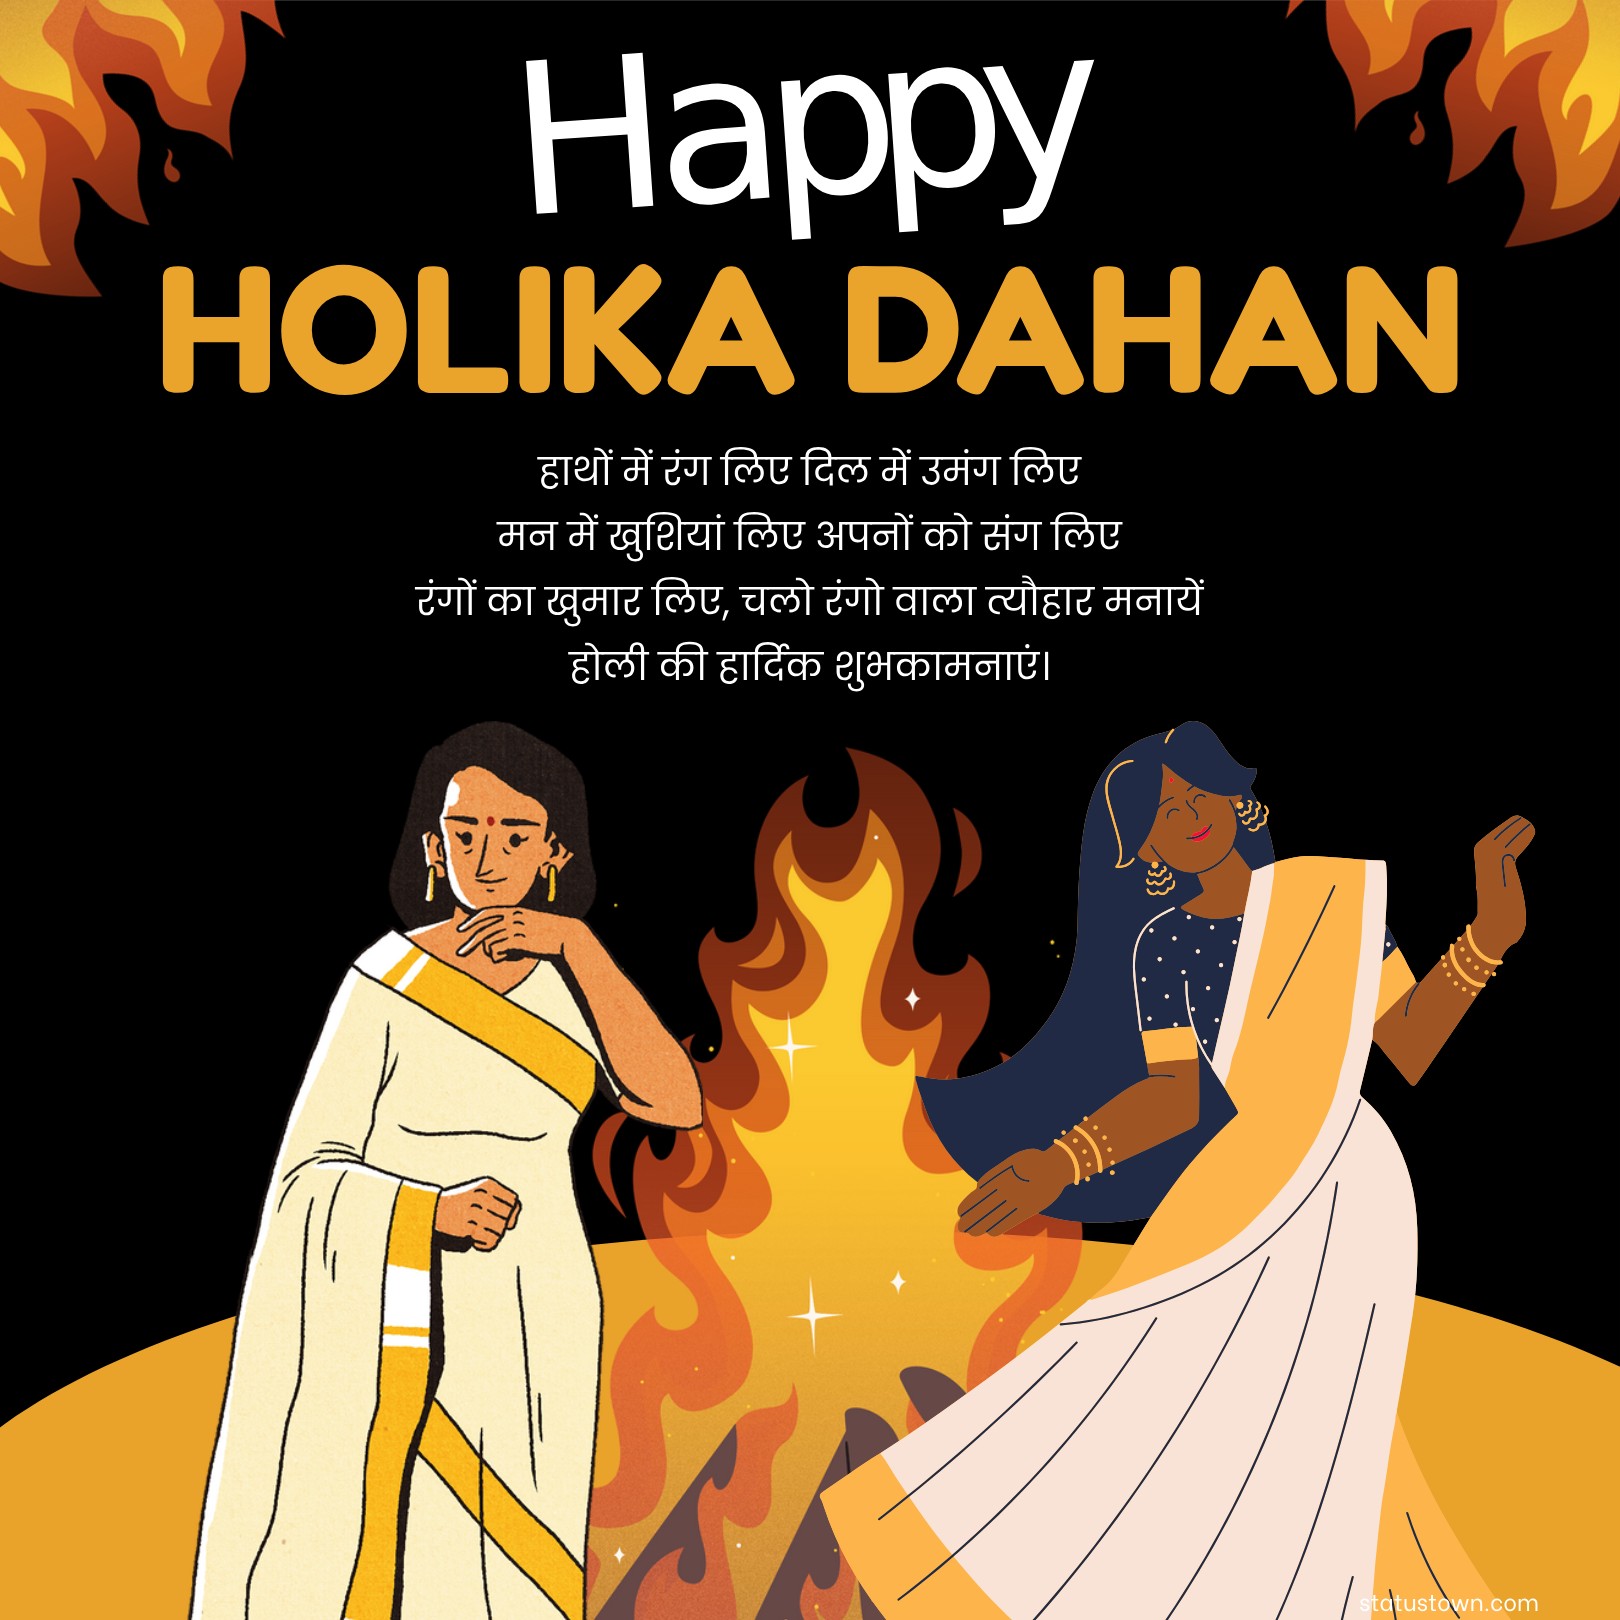 हाथों में रंग लिए, दिल में उमंग लिए, मन में खुशियां लिए, अपनों को संग लिए। रंगों का खुमार लिए, चलो रंगो वाला त्यौहार मनायें ! होली की हार्दिक शुभकामनाएं।
 - Holi Wishes in Hindi